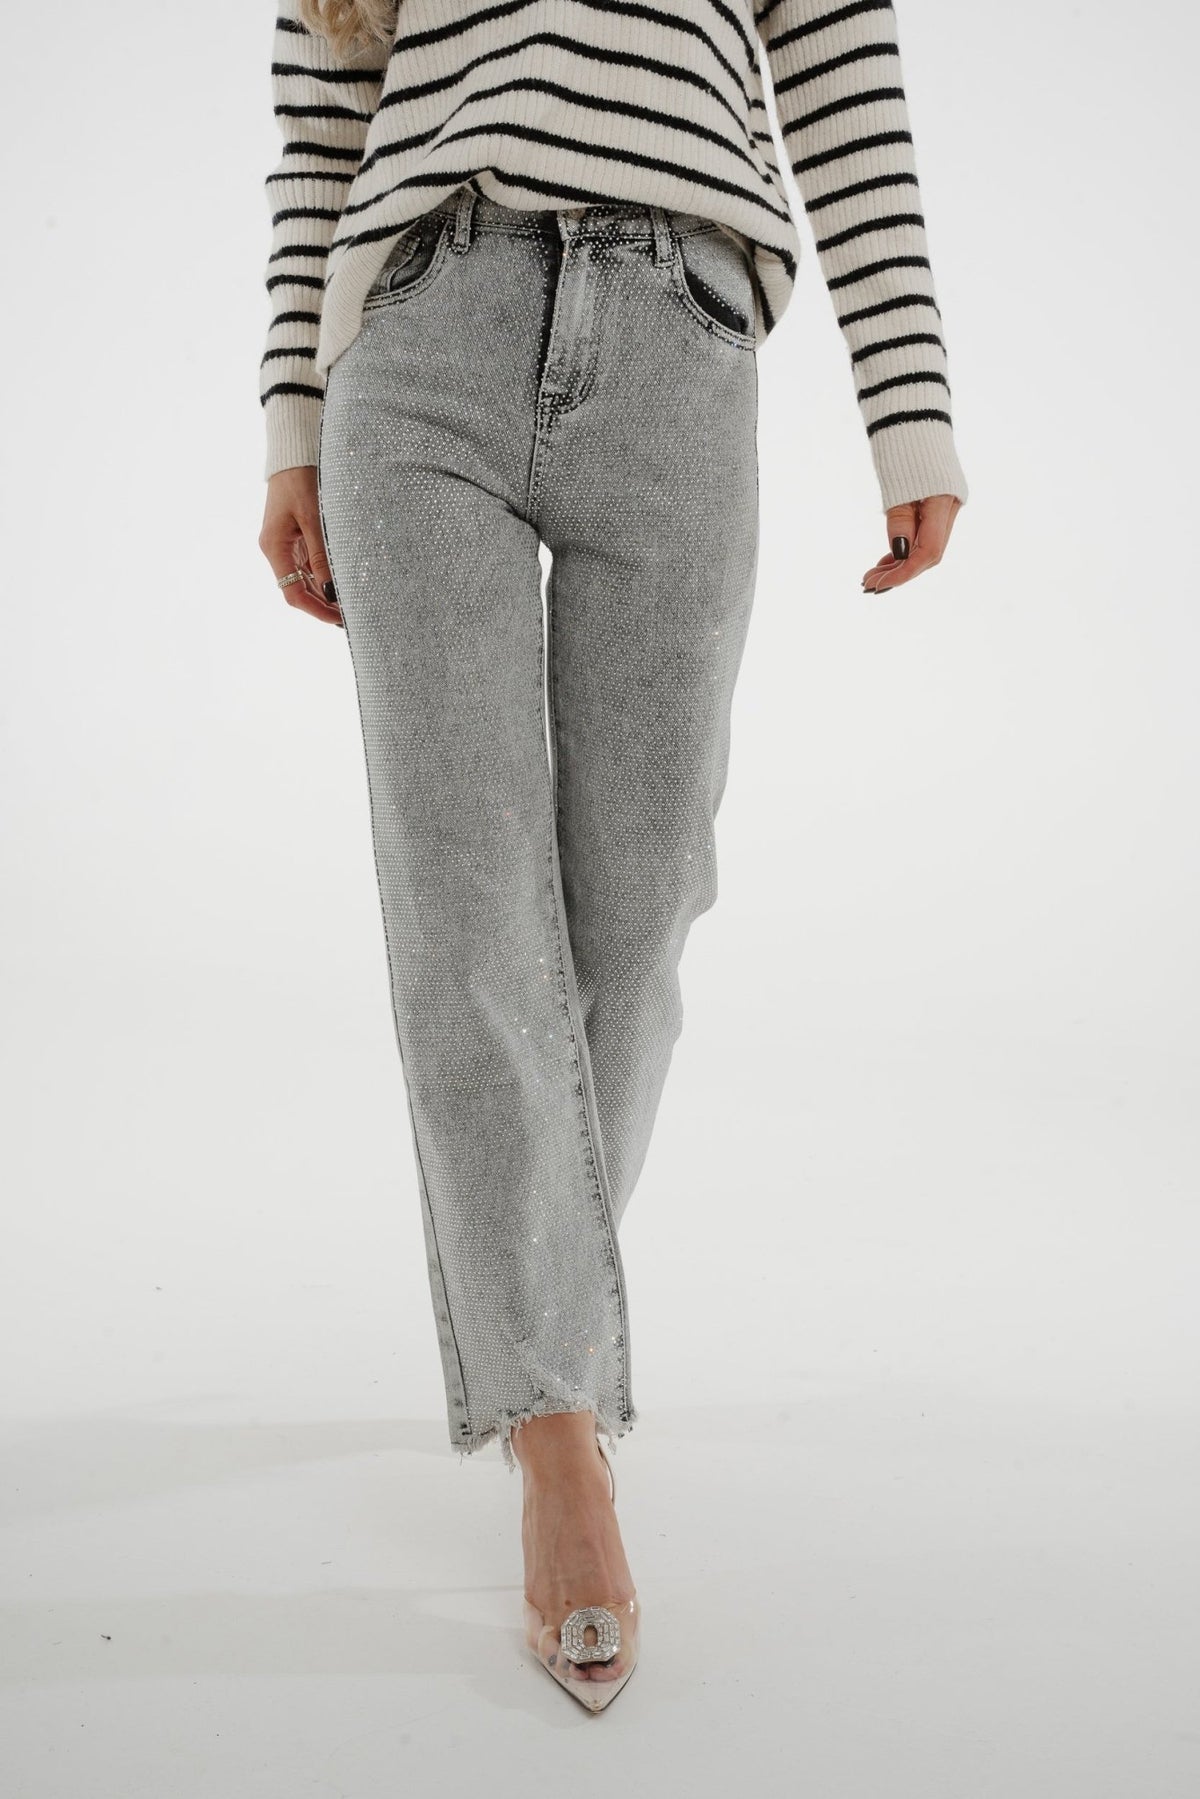 Nancy Diamanté Jeans In Grey - The Walk in Wardrobe